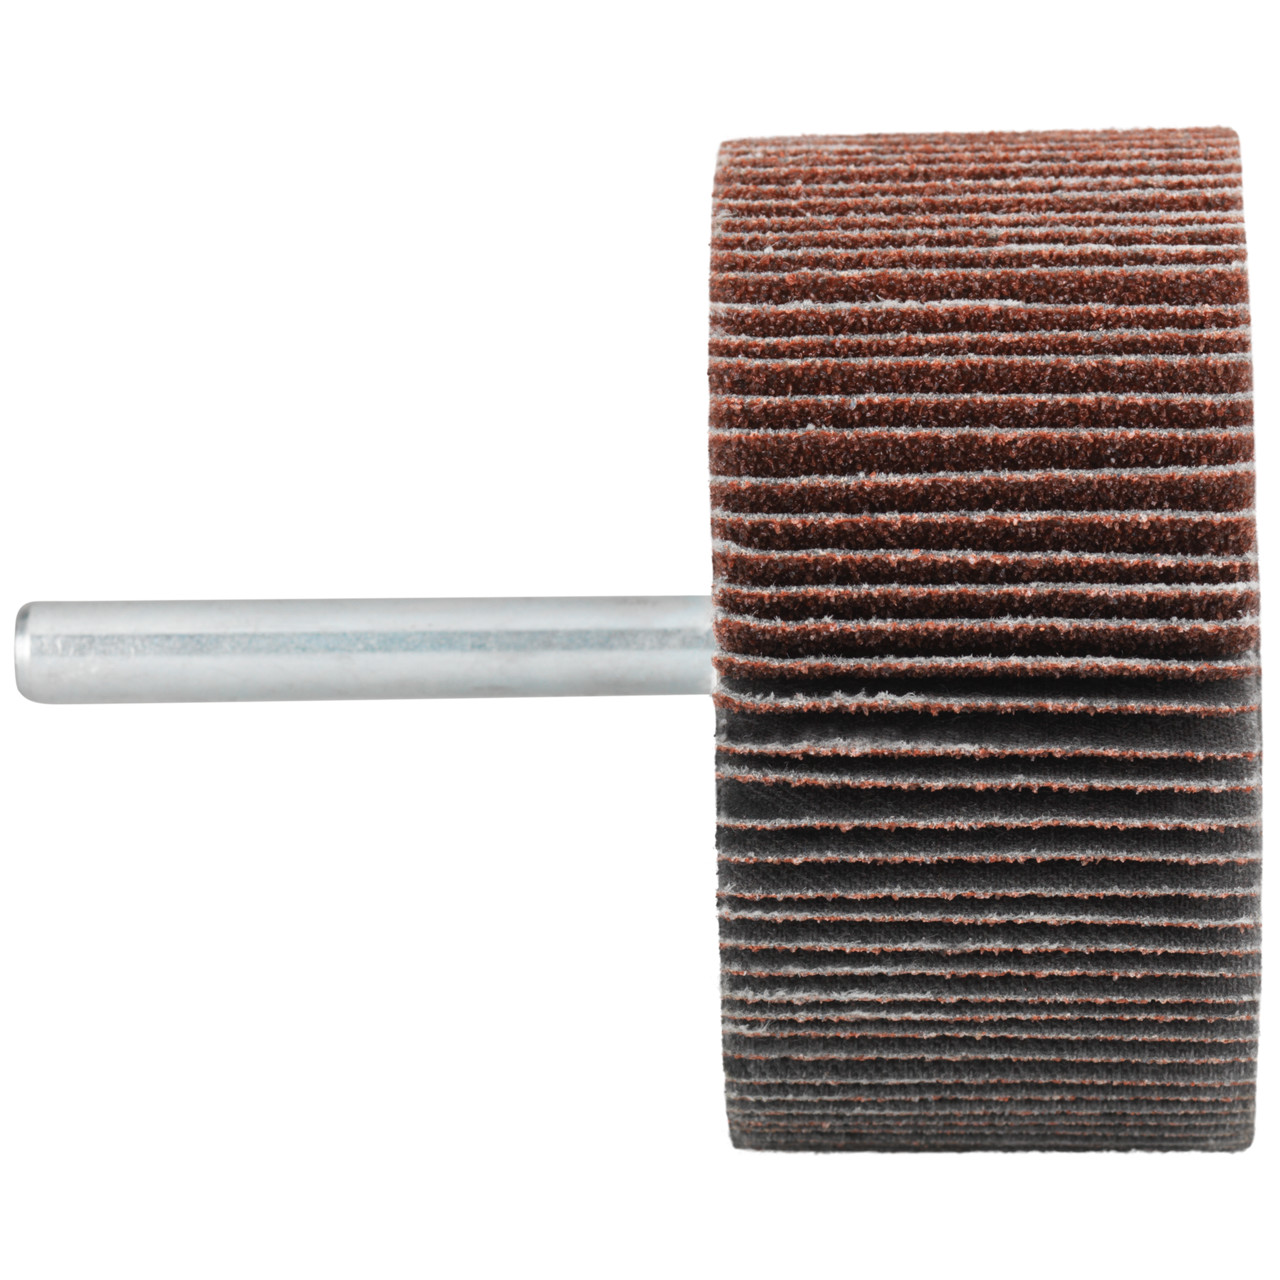 Tyrolit A-P01 C X Pennen DxD 50x30 Voor staal, roestvast staal en non-ferrometalen, P150, vorm: 52LA, Art. 816943